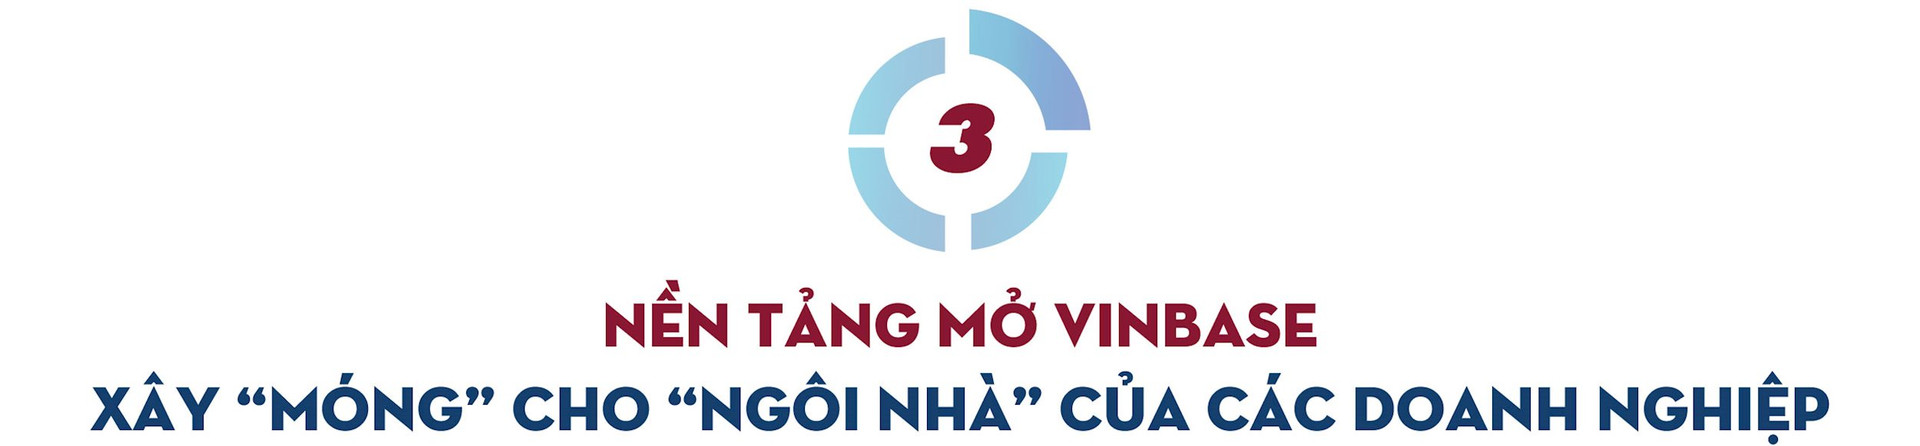 Người nắm giữ “trái tim” của trợ lý ảo ViVi trên xe VinFast: sản phẩm Việt phục vụ người Việt và ước mơ về một “Google Việt Nam” trong lĩnh vực AI - Ảnh 6.